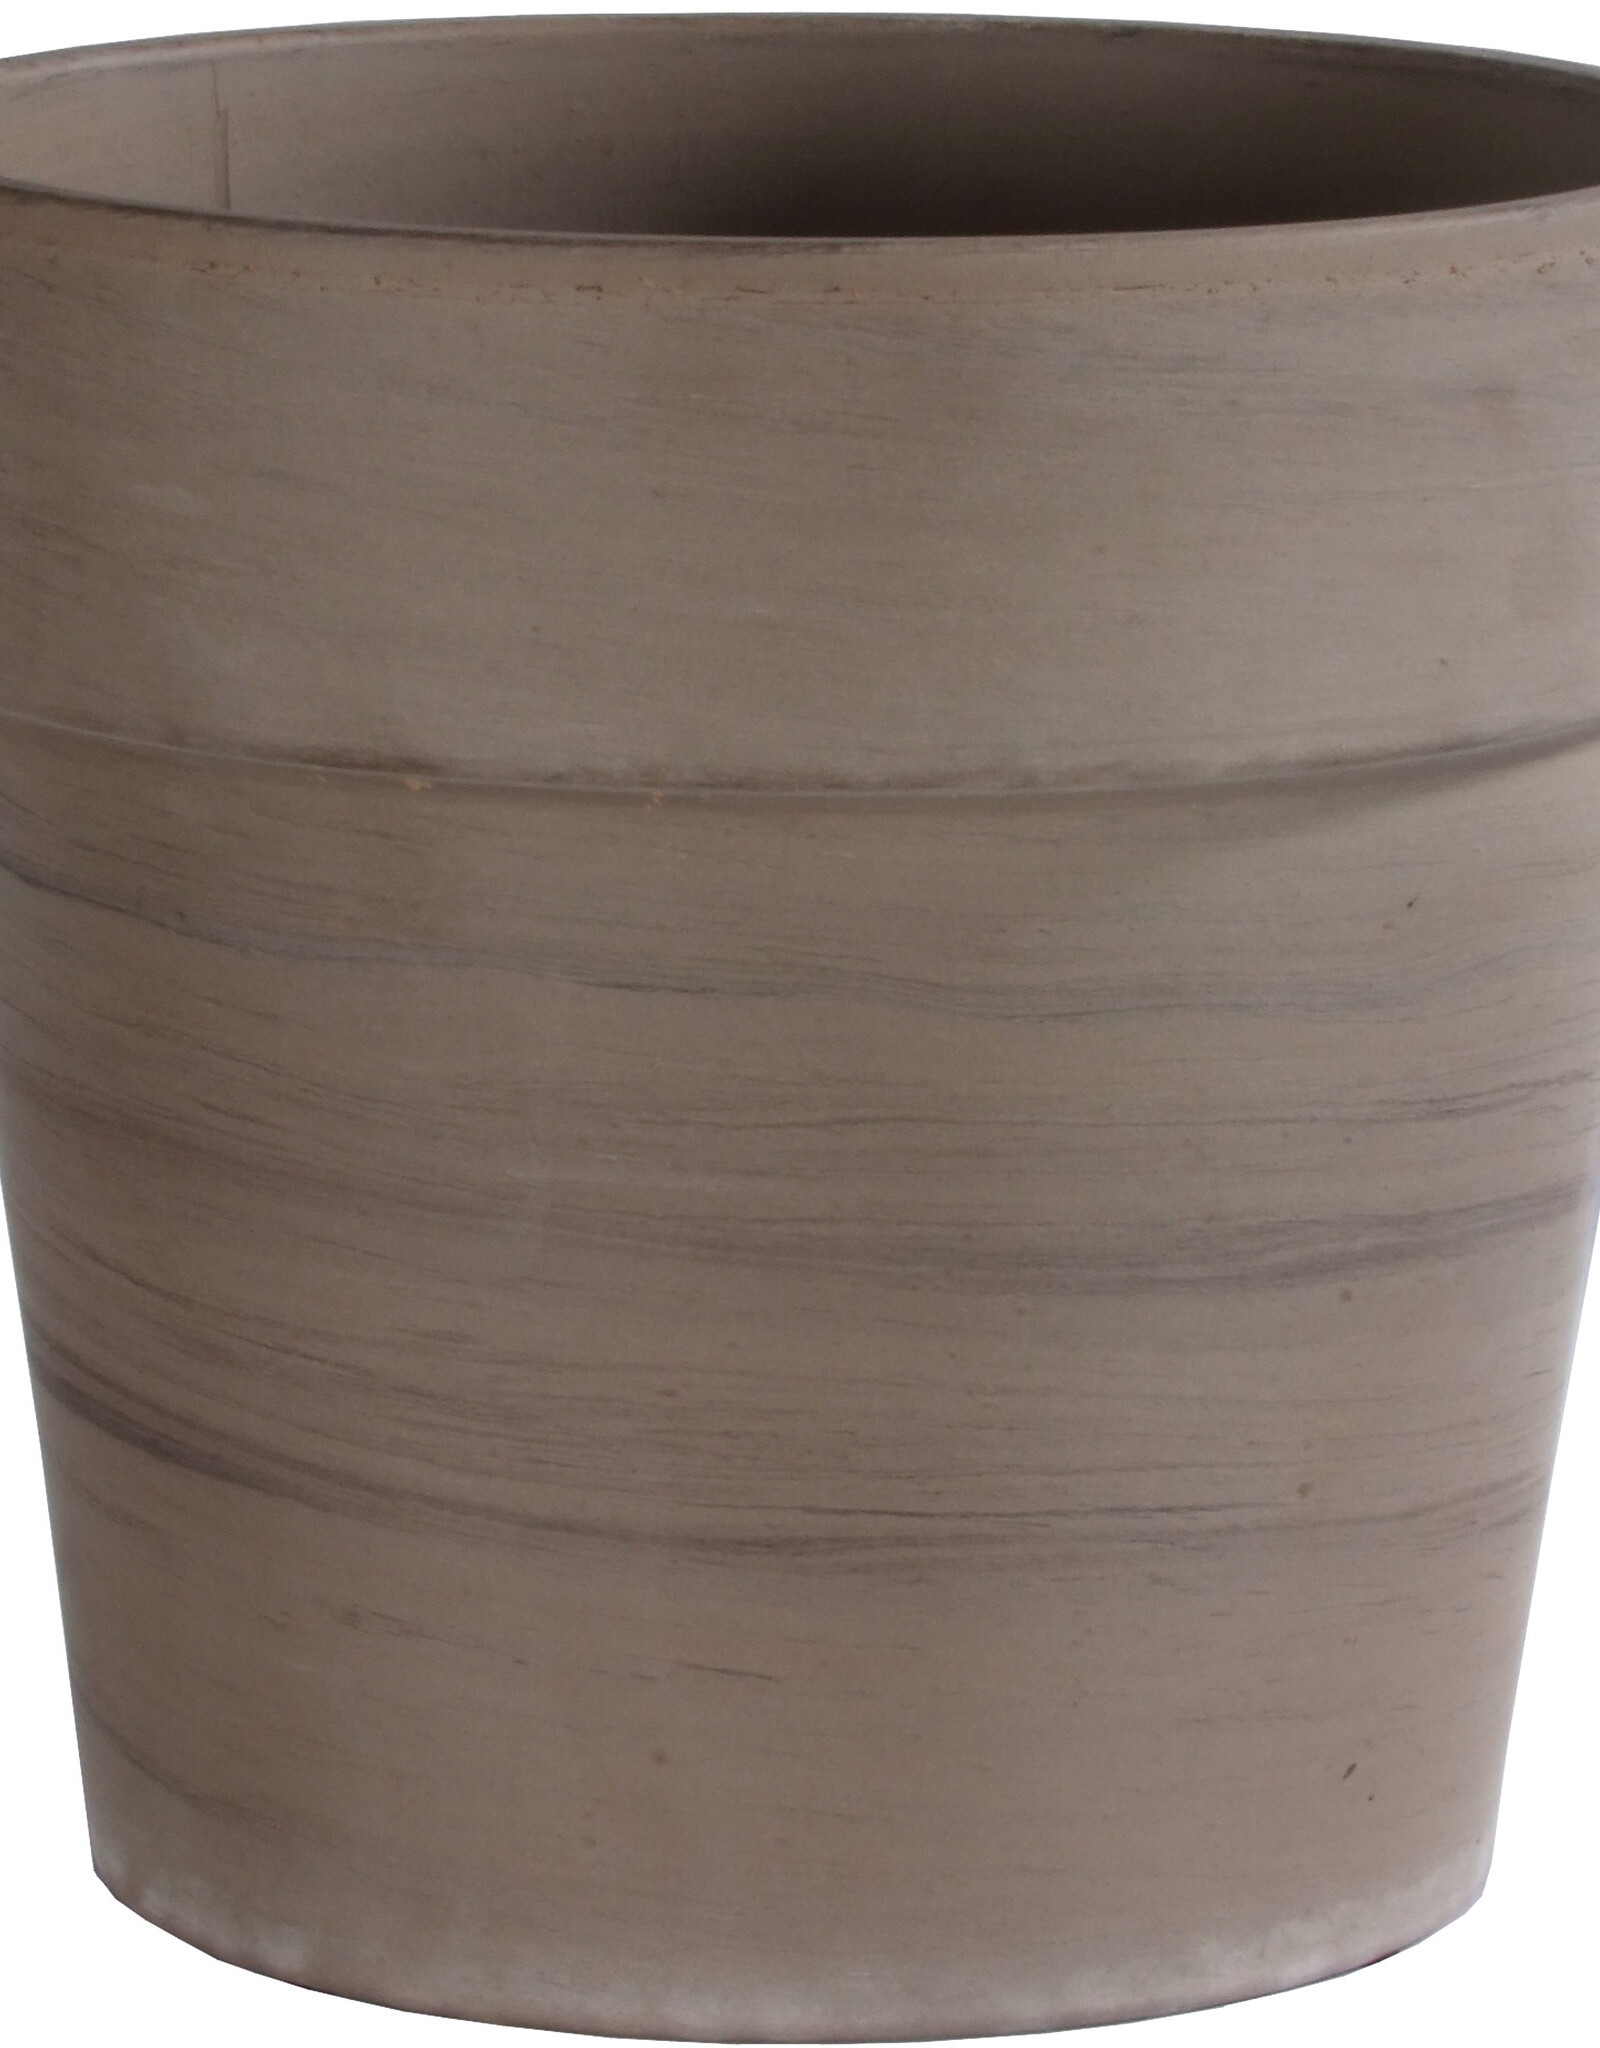 11“ x 9.25” Calima Pot- Basalt Clay